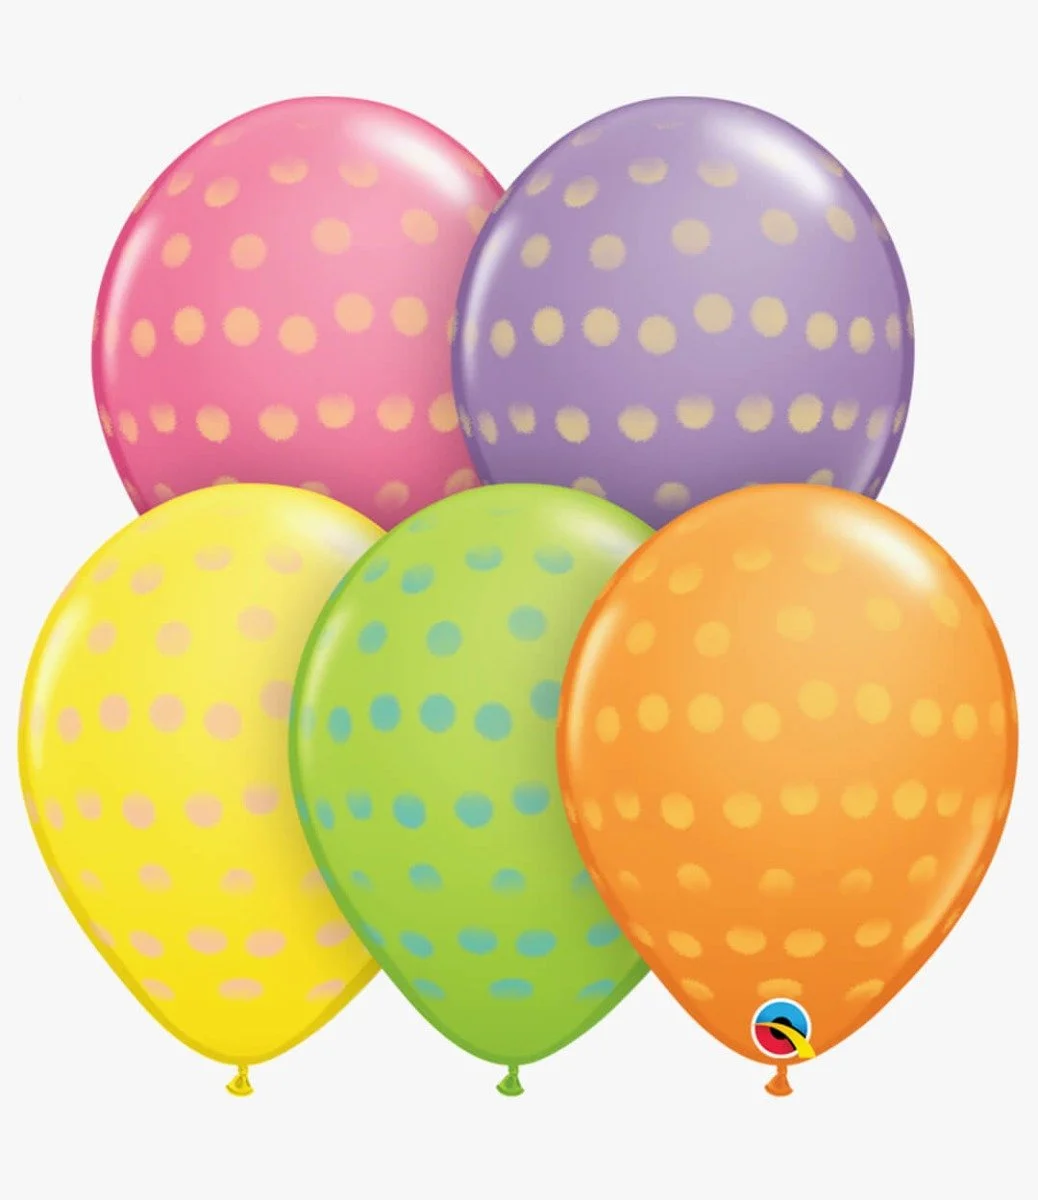 5 Pieces Latex Balloons Big Polka Dots